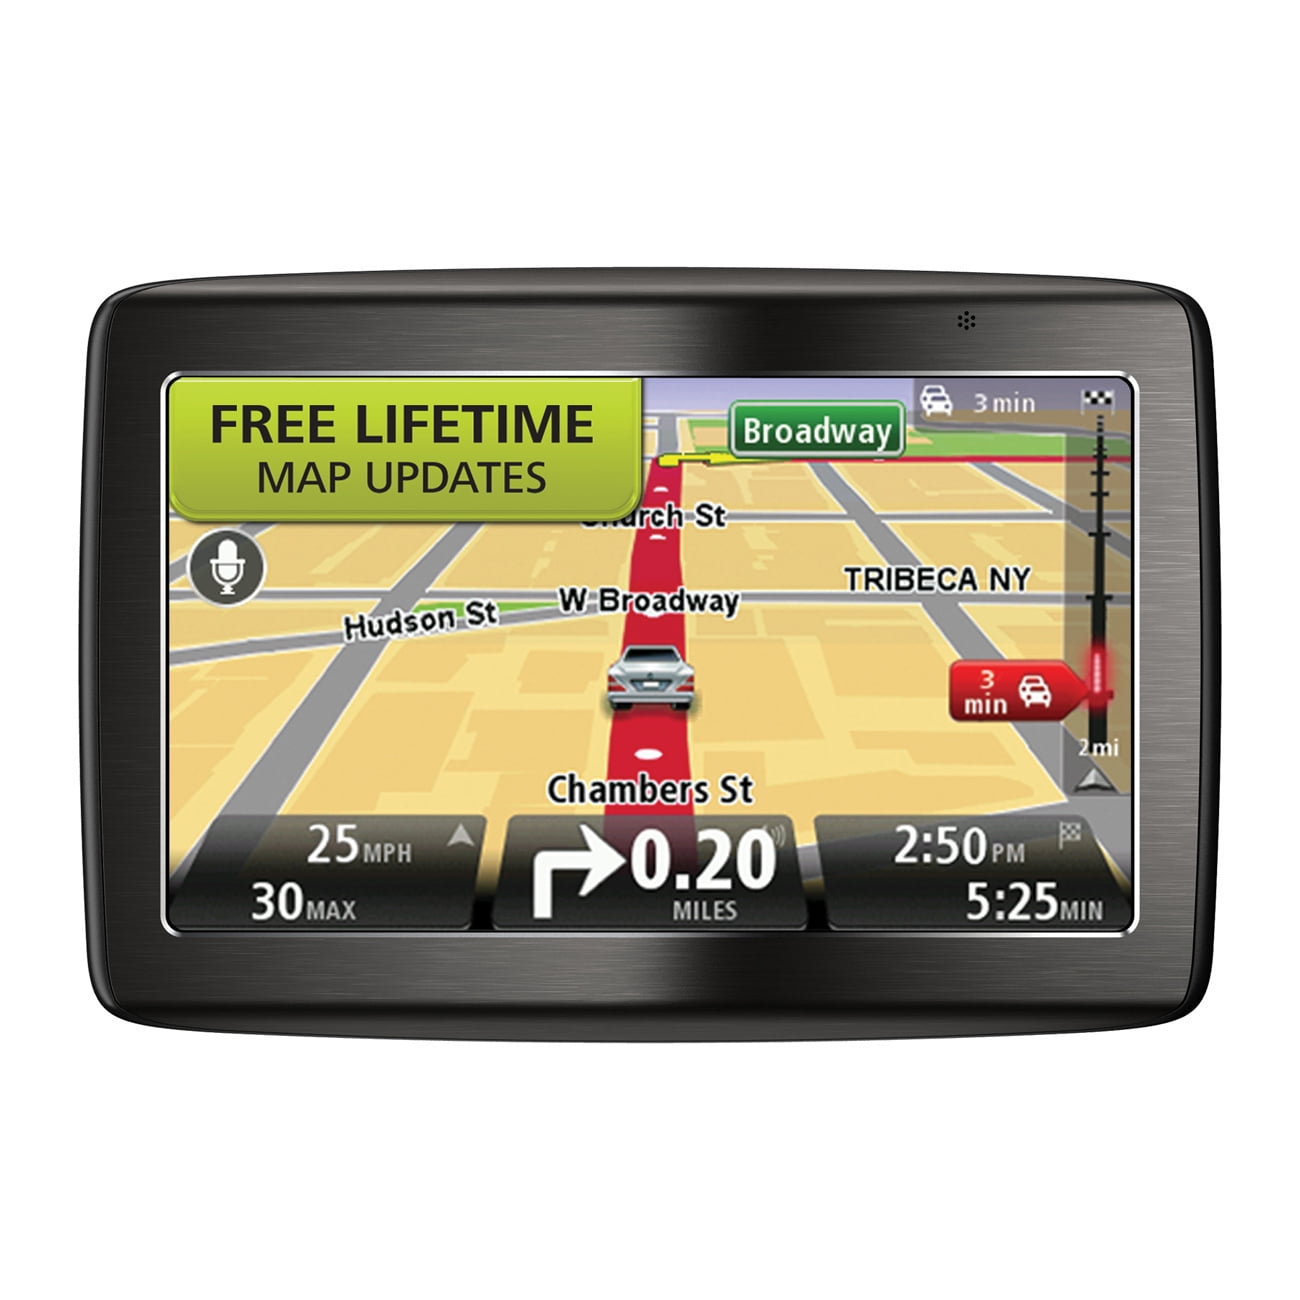 TomTom 1435 M Automobile Portable GPS Navigator - Walmart.com